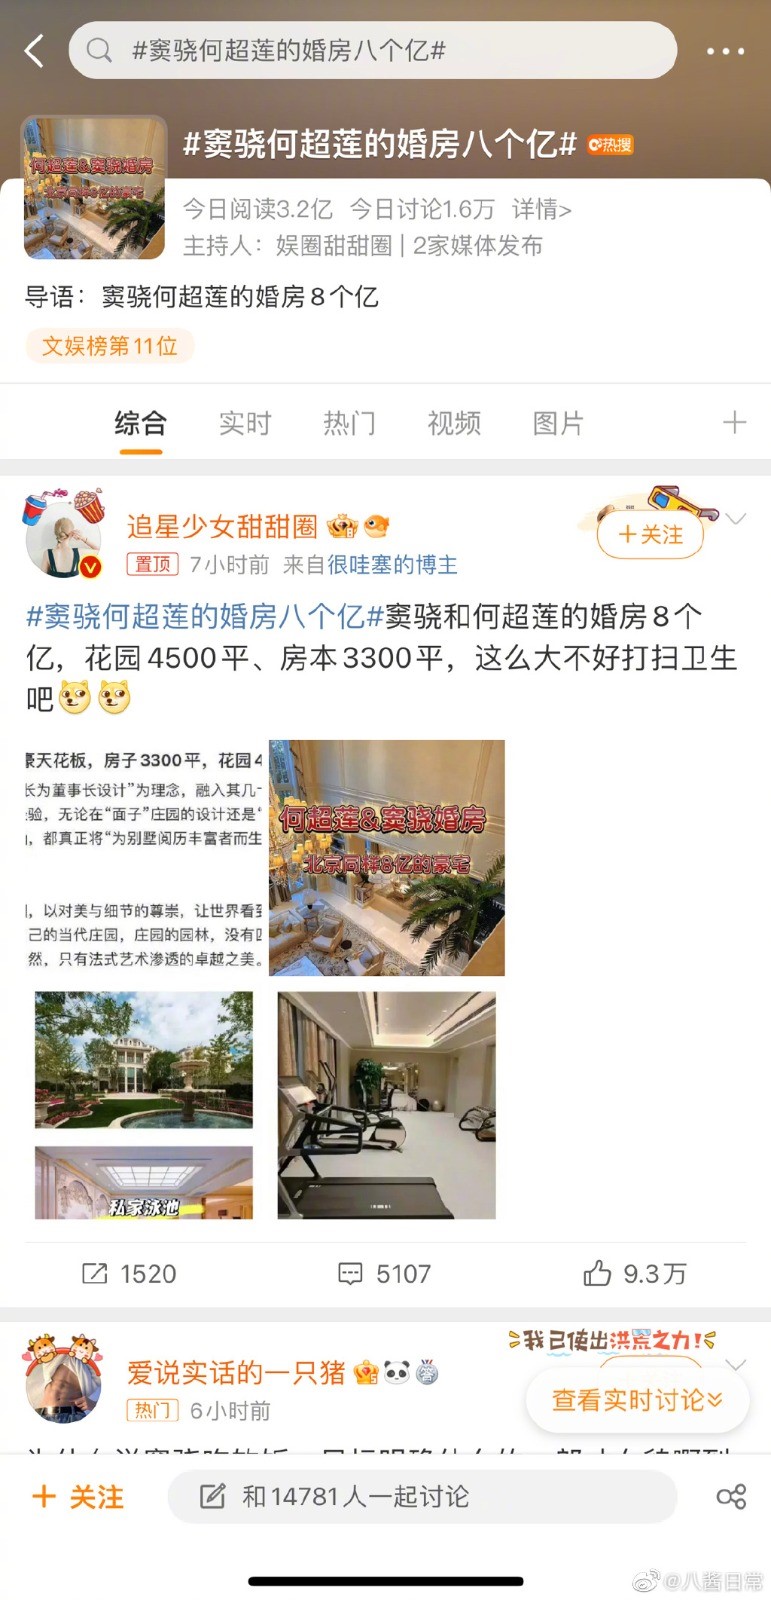 网上流传窦骁和何超莲的新房值九亿港元。